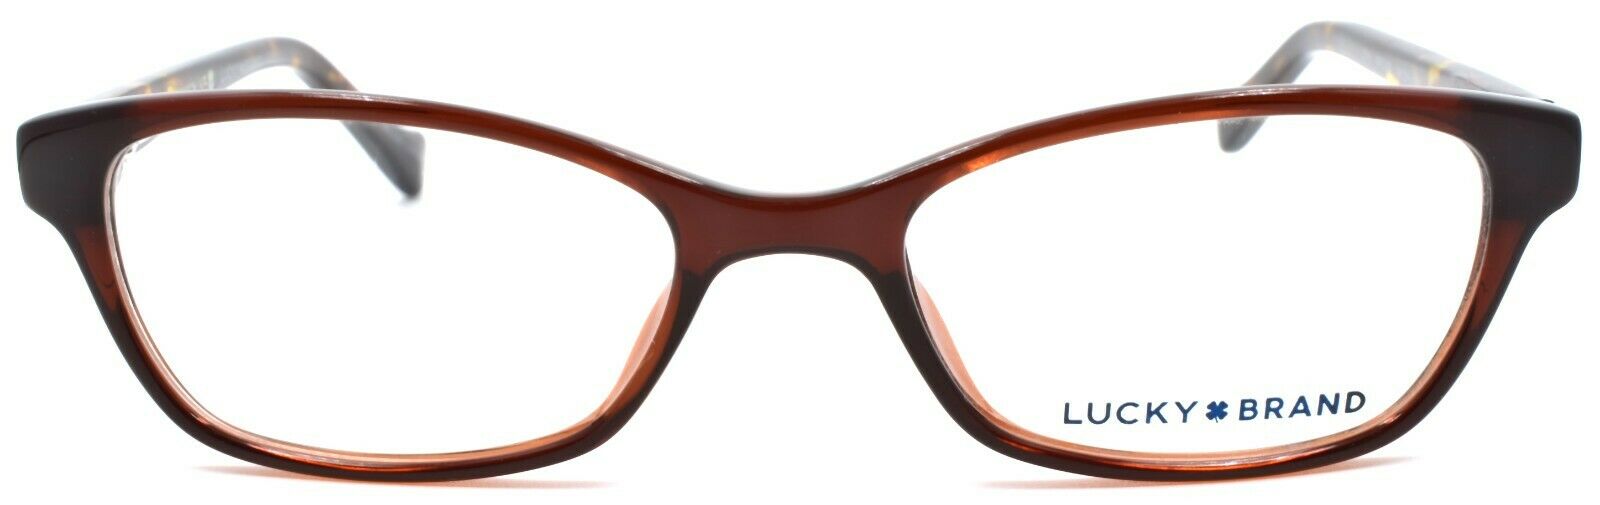 2-LUCKY BRAND D706 Kids Girls Eyeglasses Frames 46-16-125 Brown-751286295719-IKSpecs